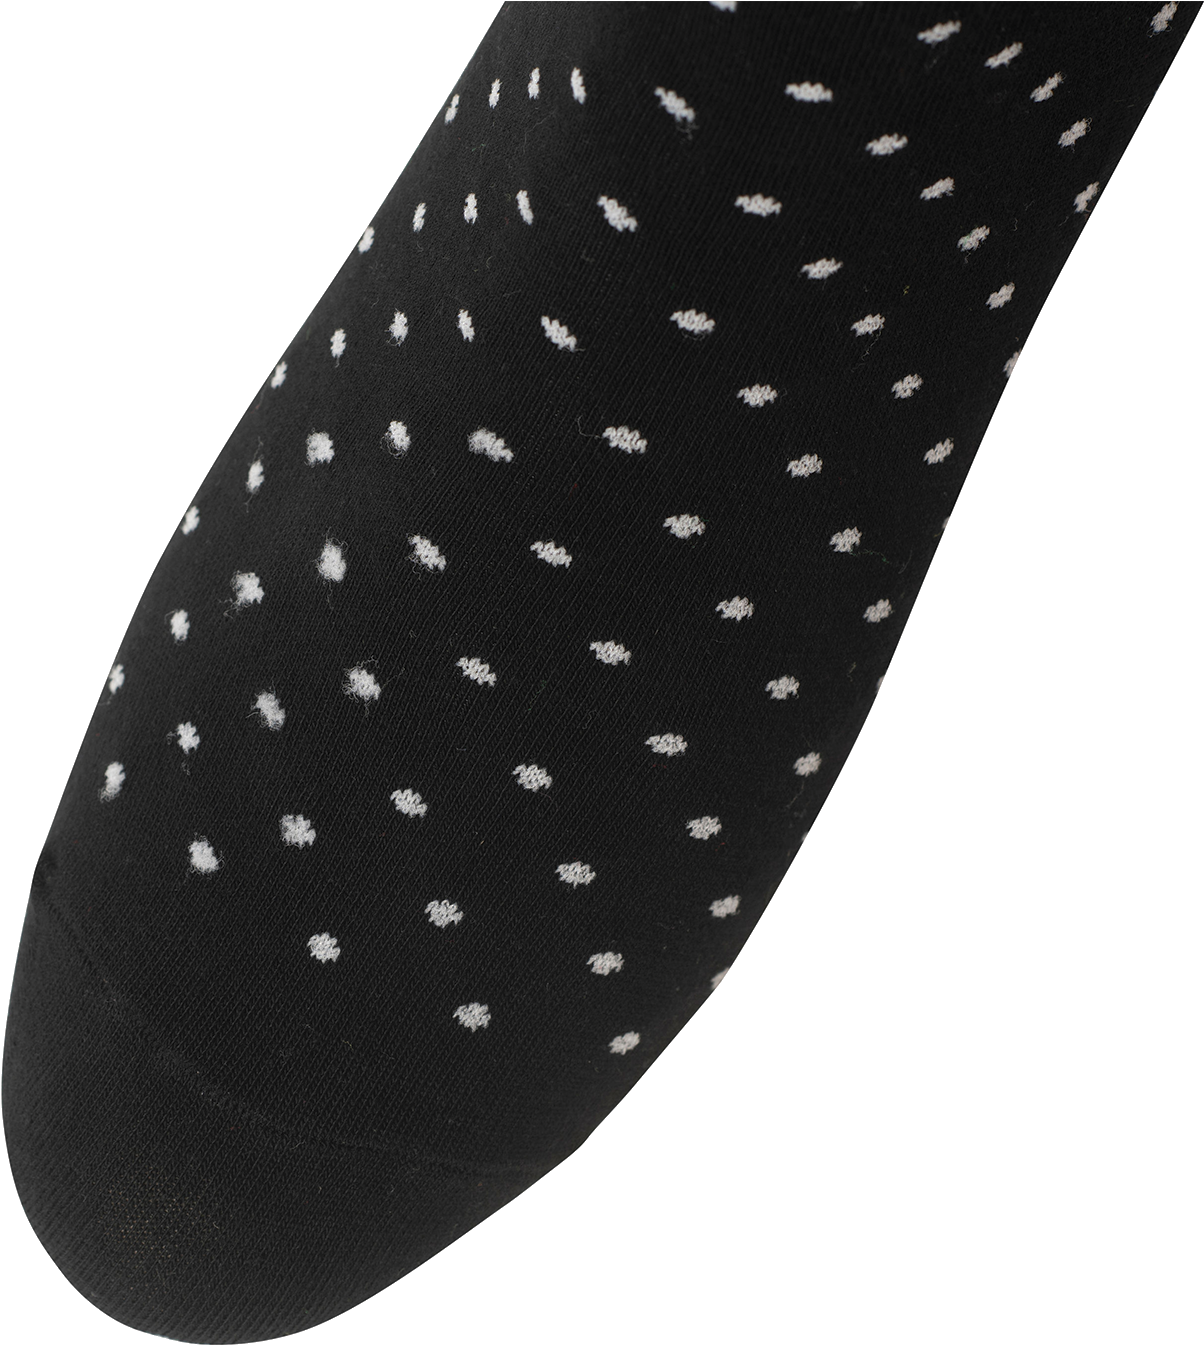 Black Sock White Dots Pattern PNG